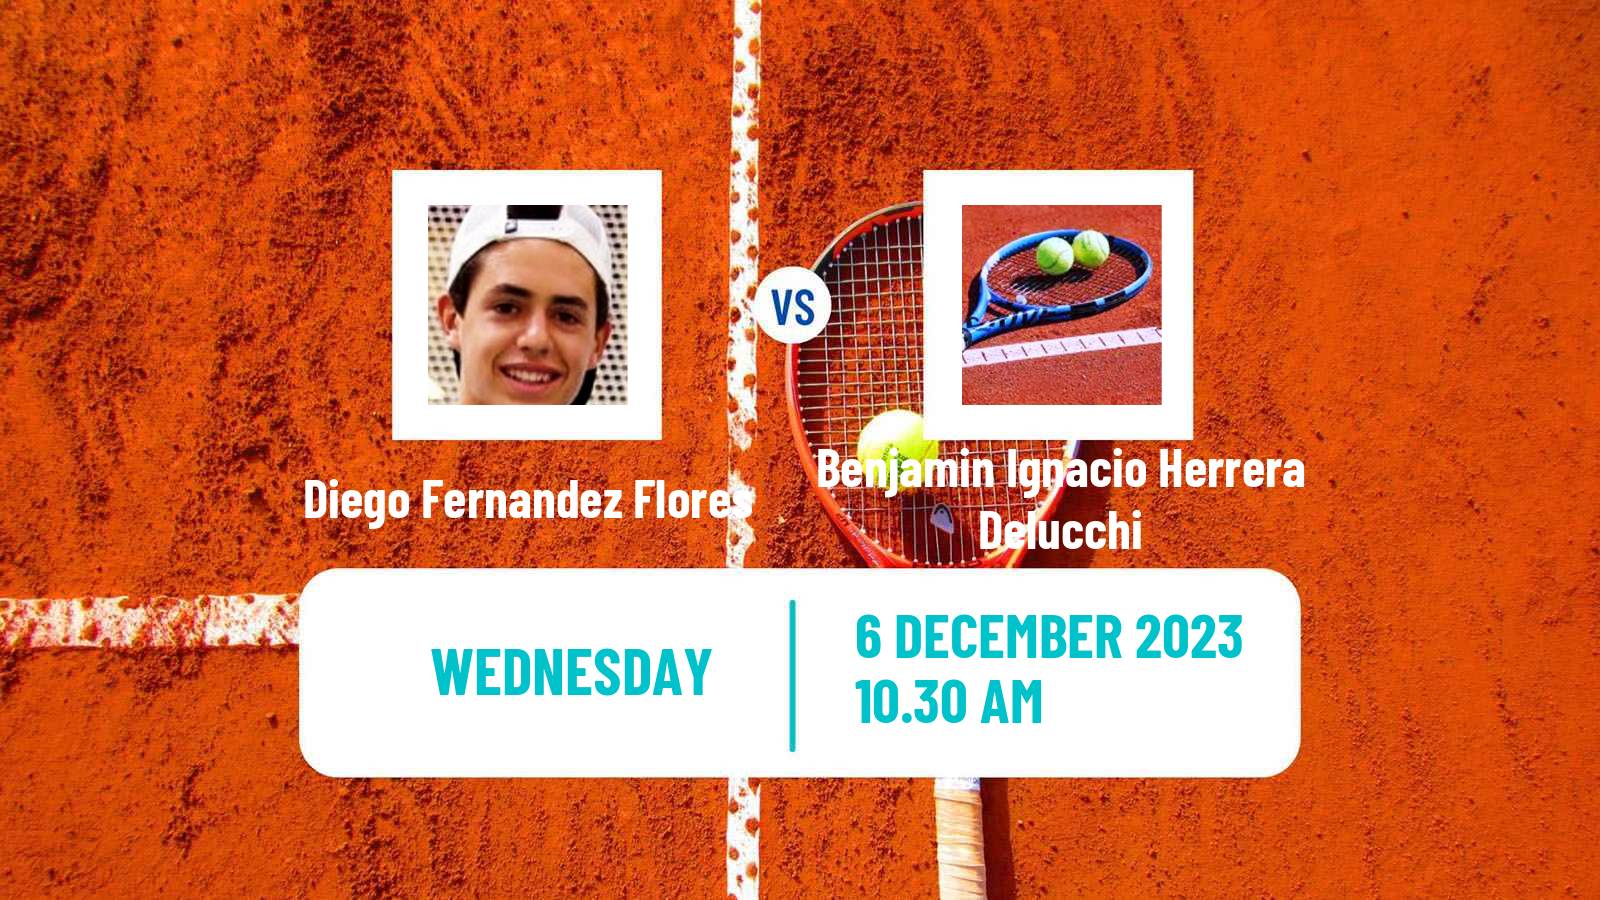 Tennis ITF M15 Concepcion Men Diego Fernandez Flores - Benjamin Ignacio Herrera Delucchi